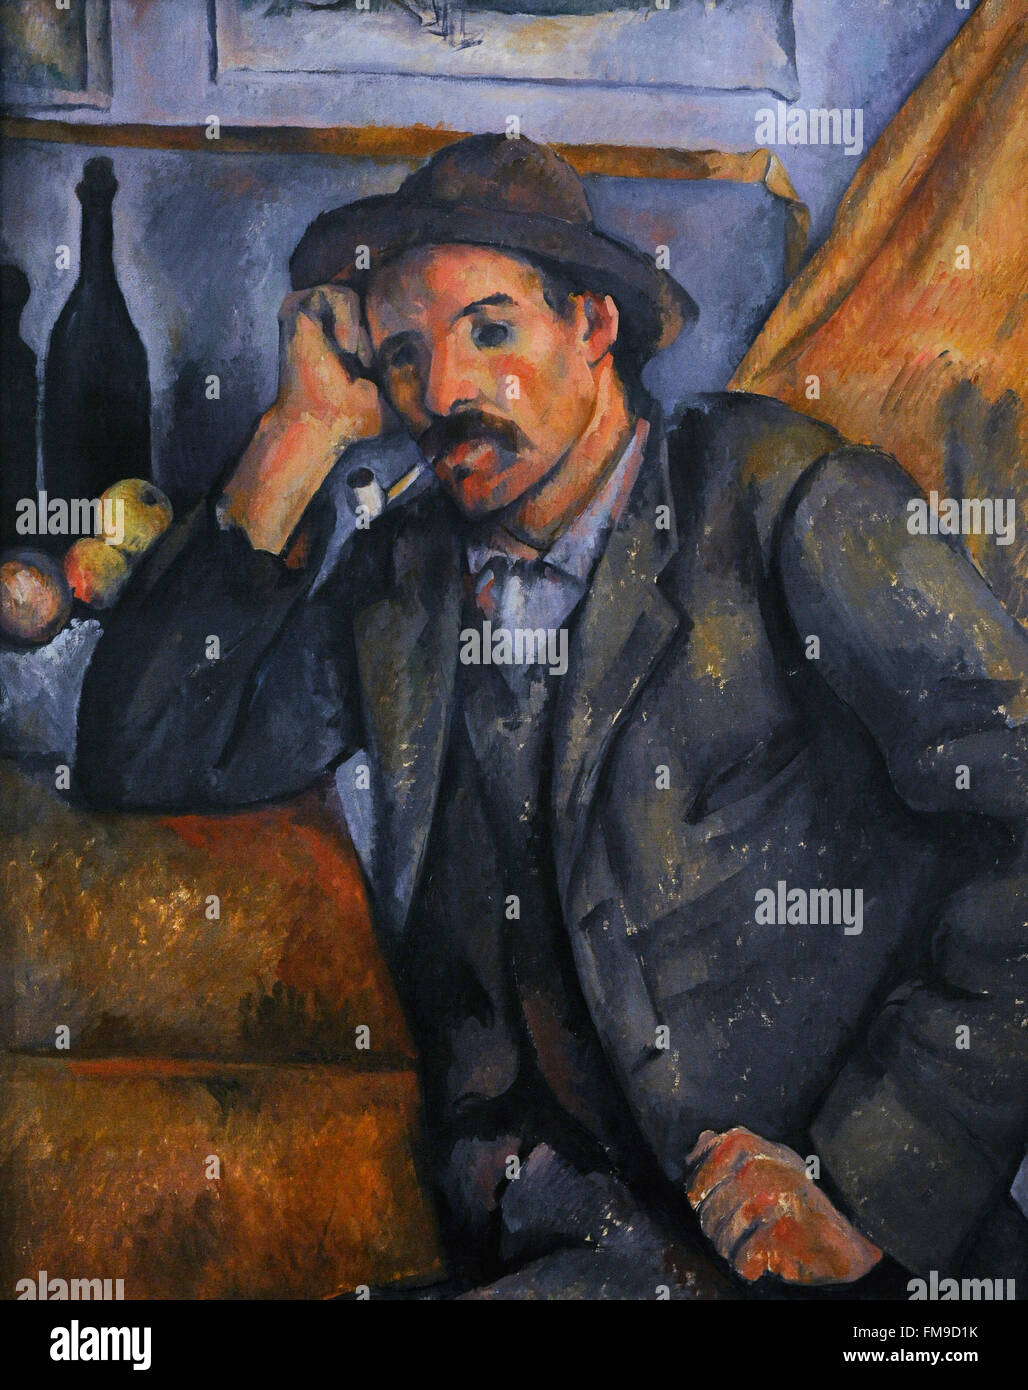 Paul Cézanne (1839-1906). Französischer Maler. Raucher, ca. 1890-1892. Öl auf Leinwand. Die Eremitage. Sankt Petersburg. Russland. Stockfoto